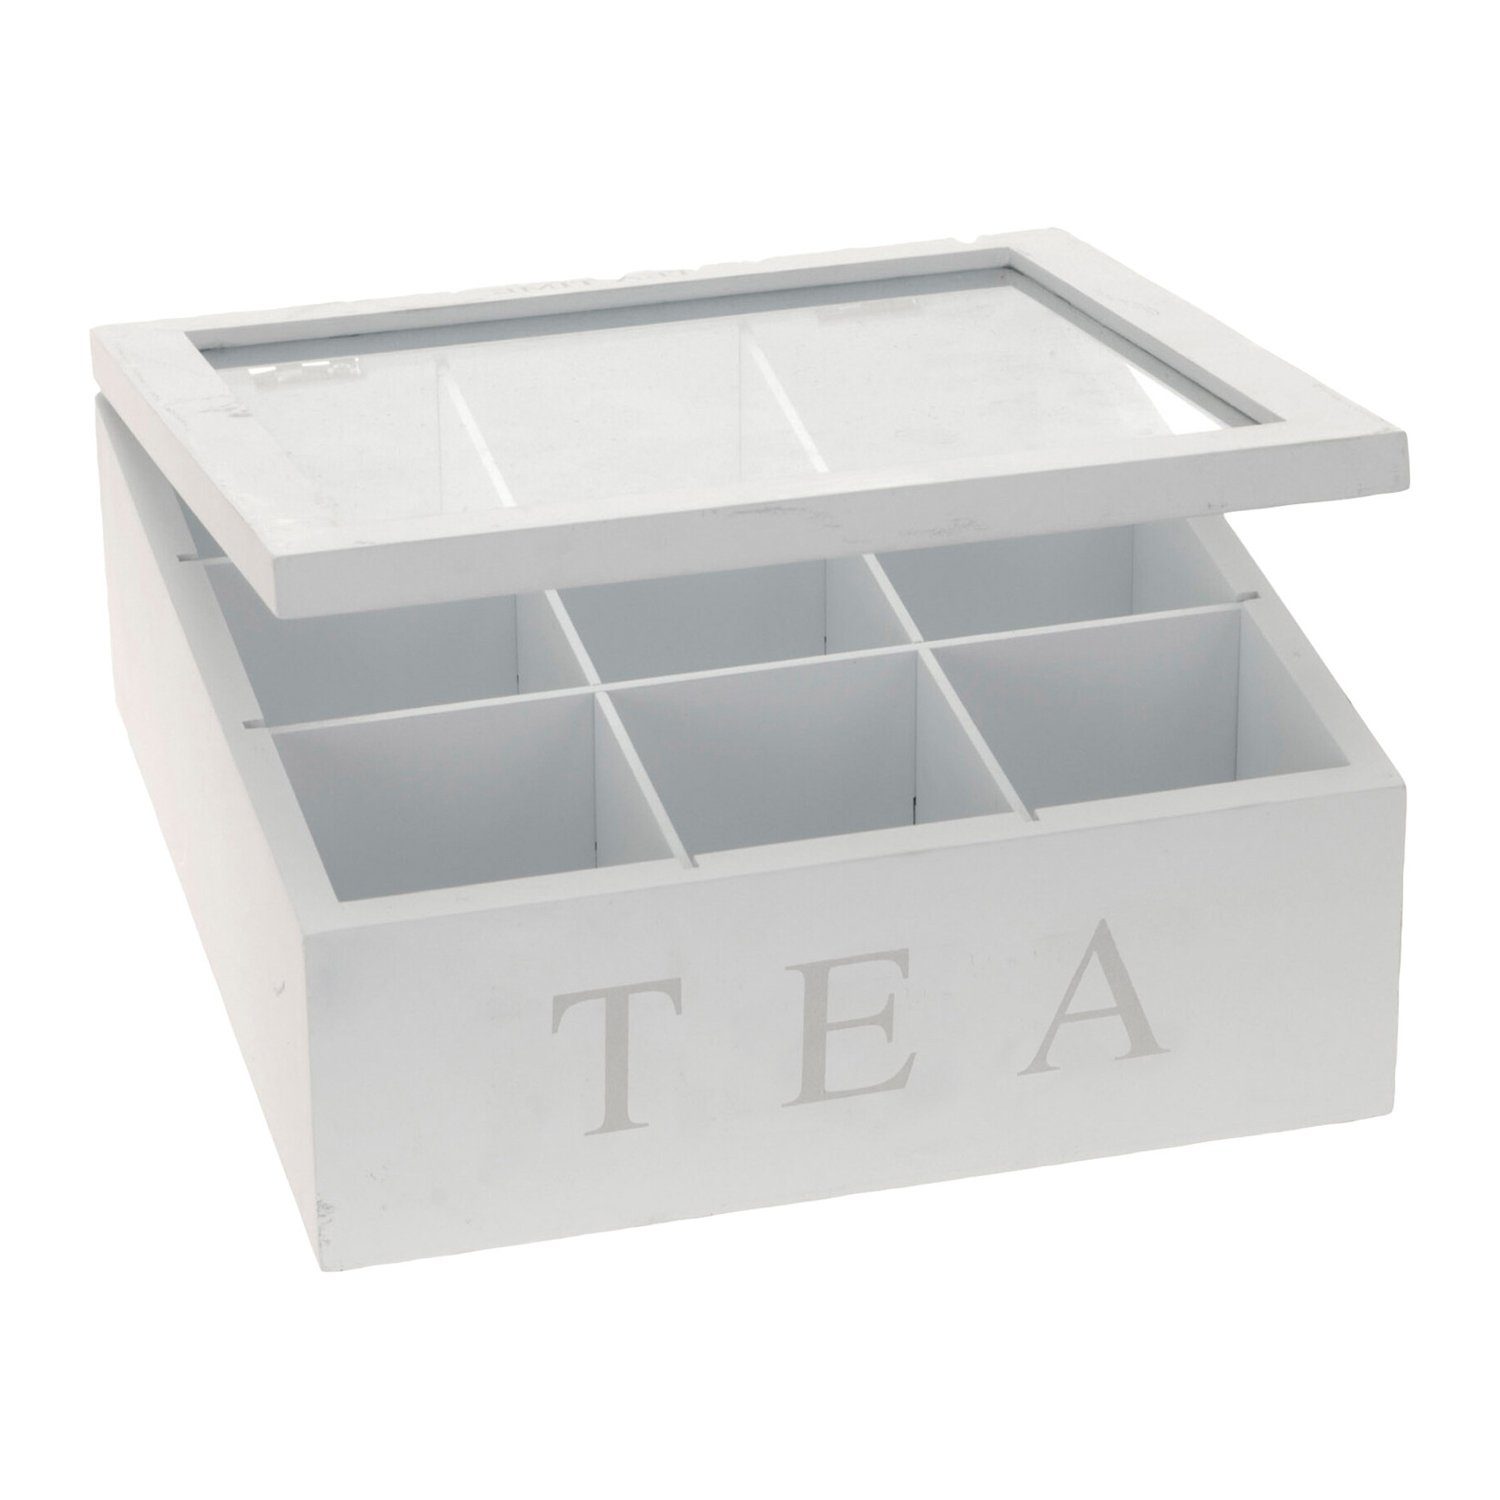 INDA-Exclusiv Nähkästchen Teebox Holz Weiß Deckel 9-Fächer mit Aufschrift TEA